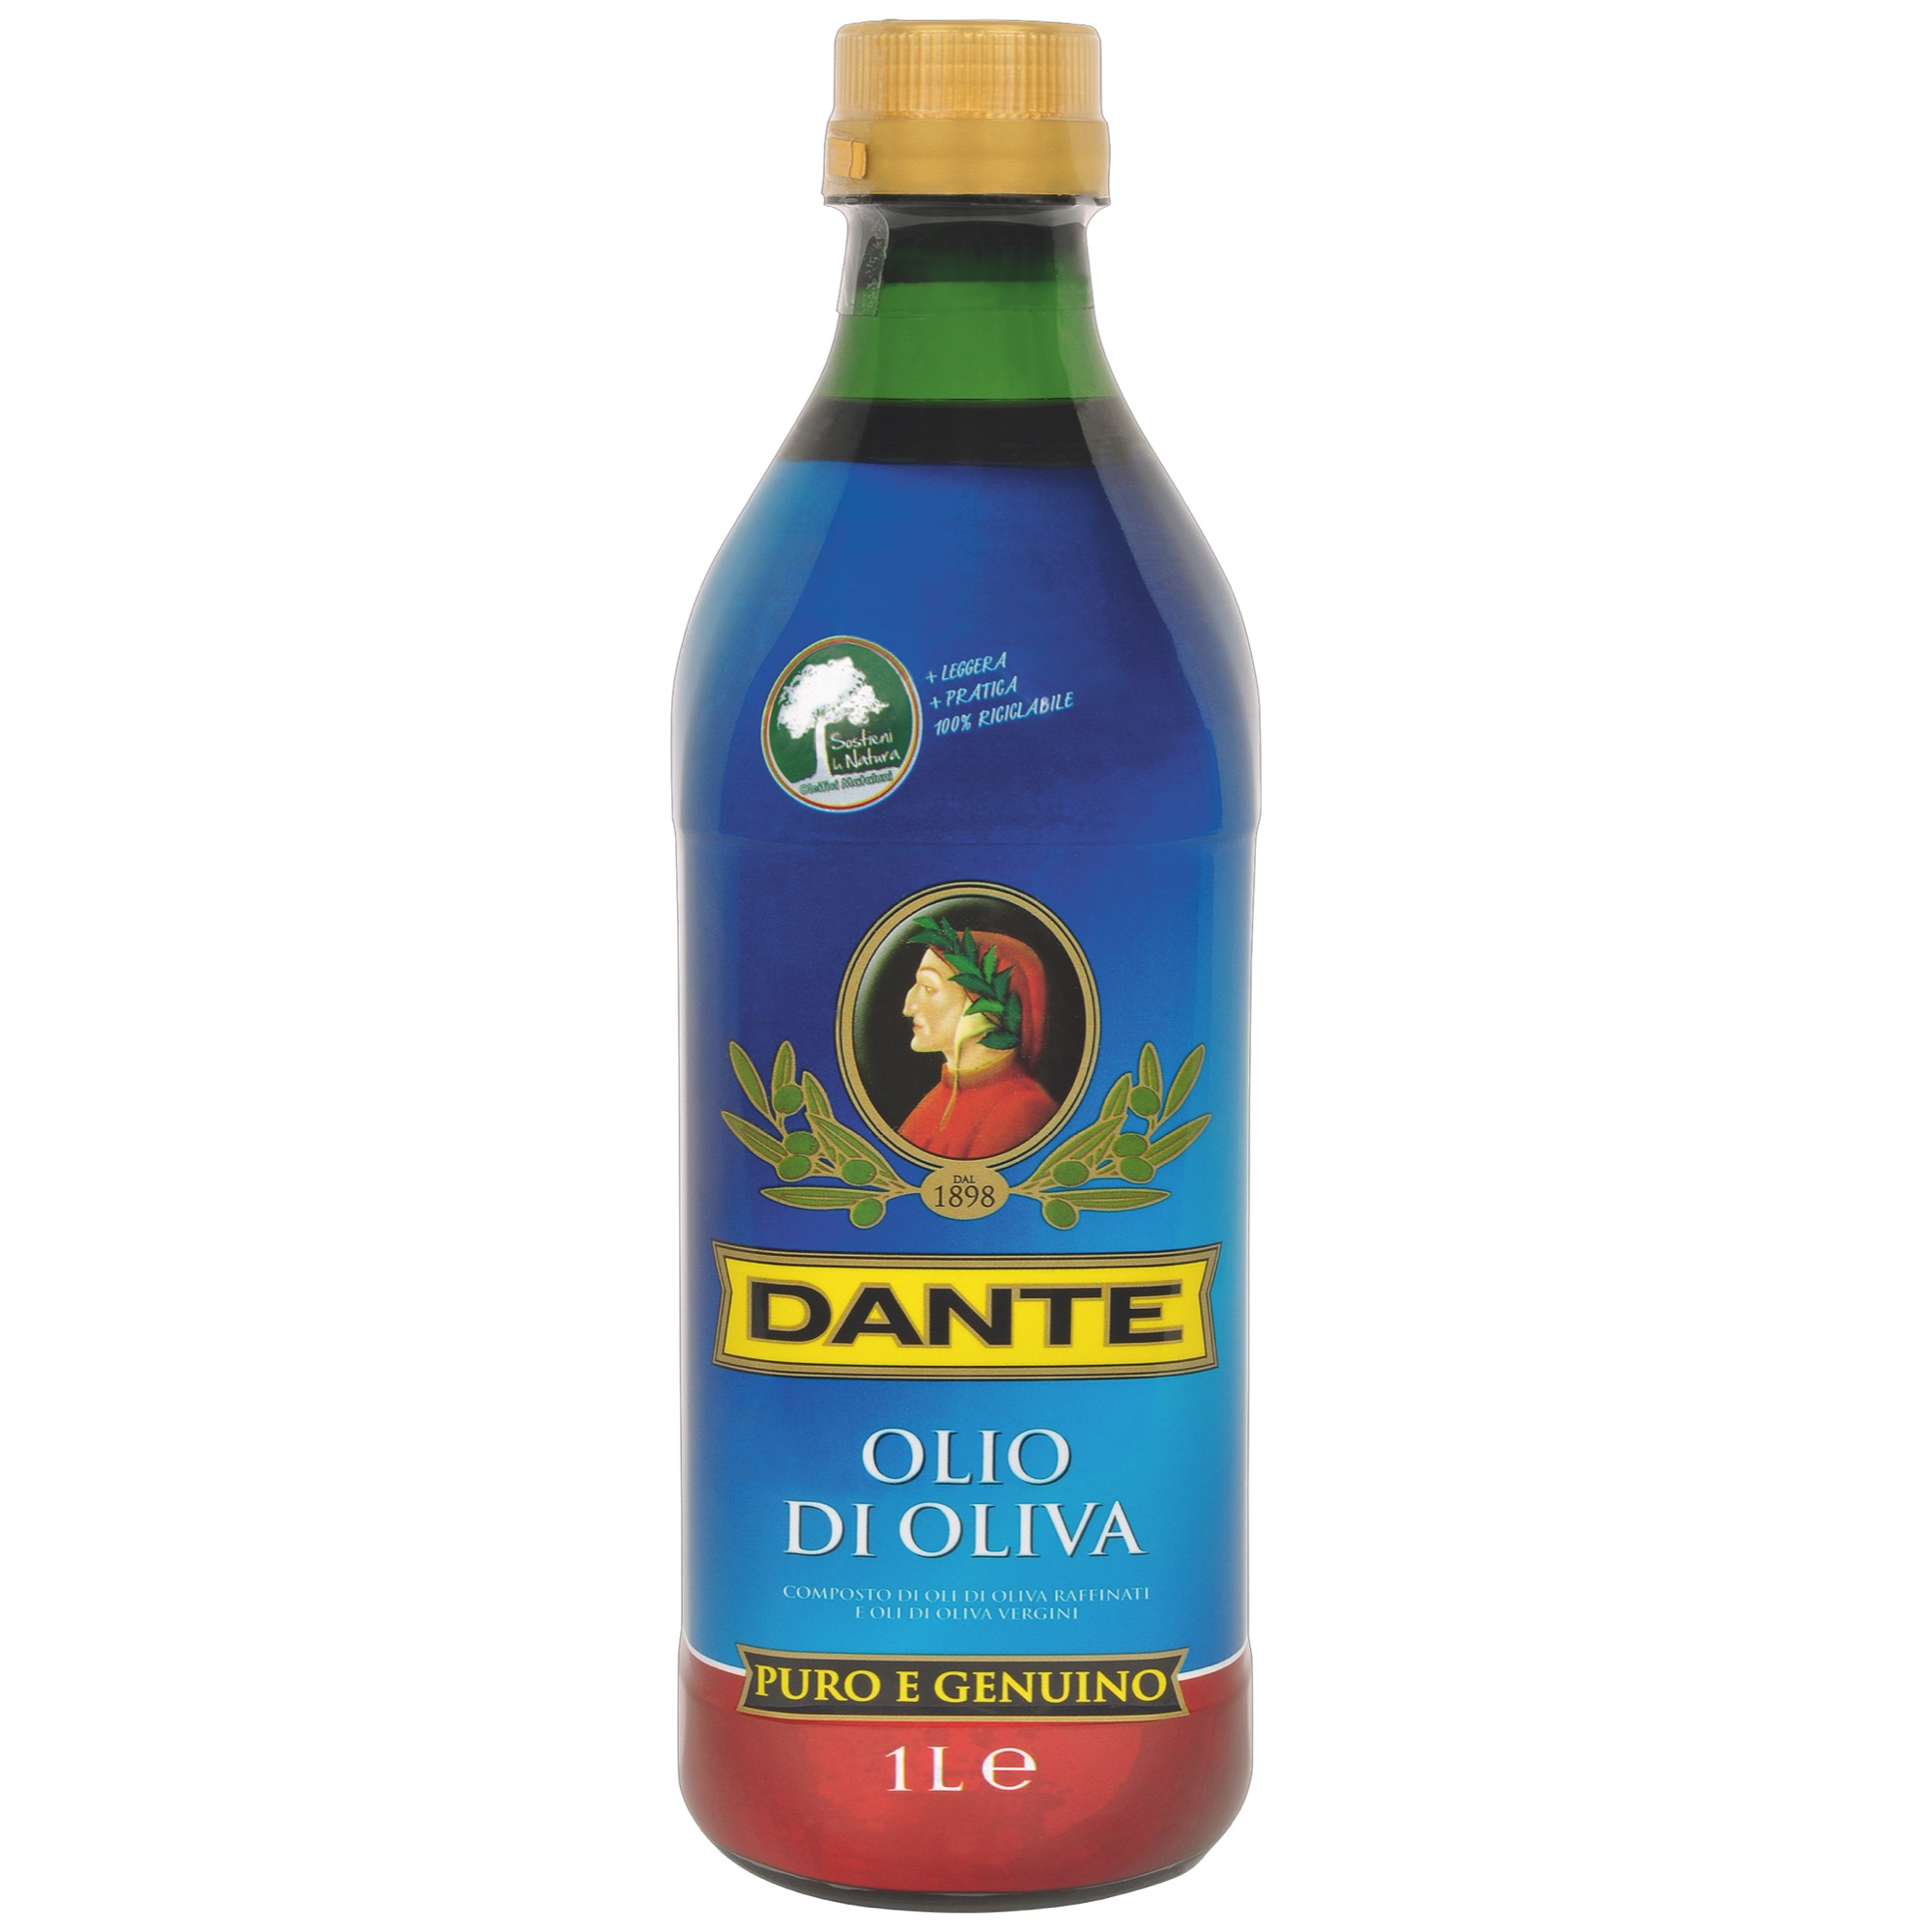 Dante olivovy olej Plast 1L